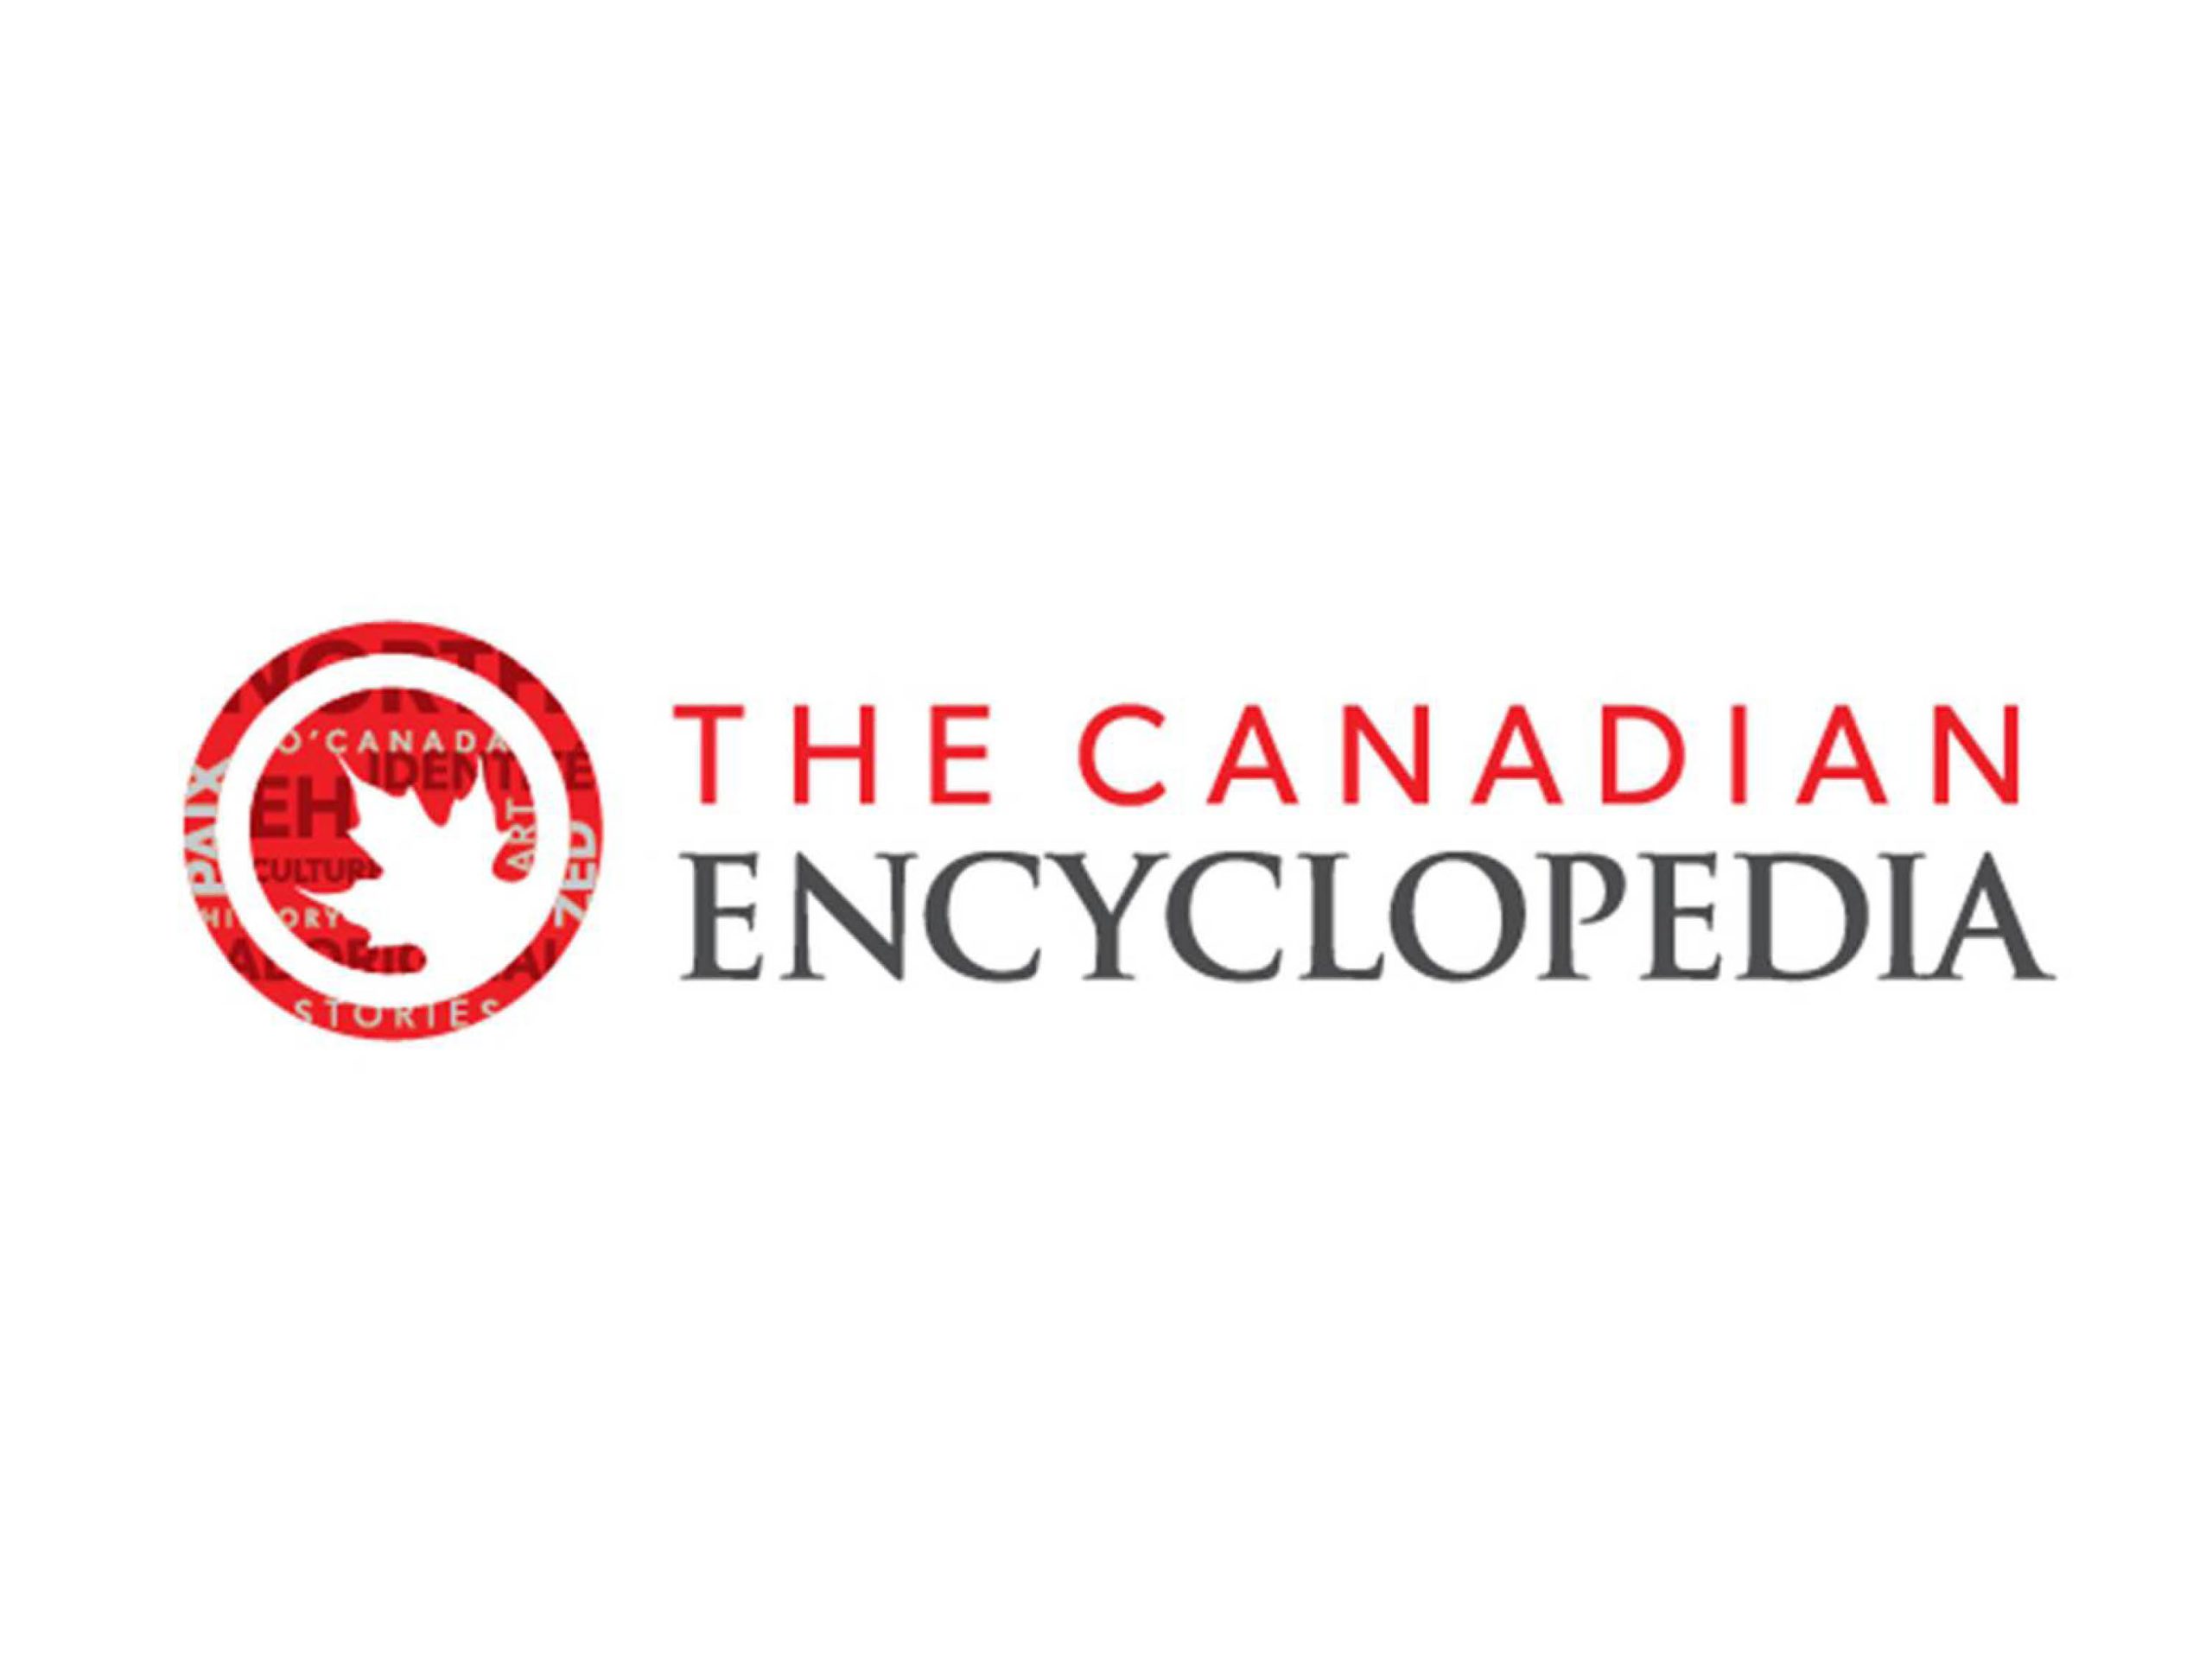 The Canadian Encyclopedia logo